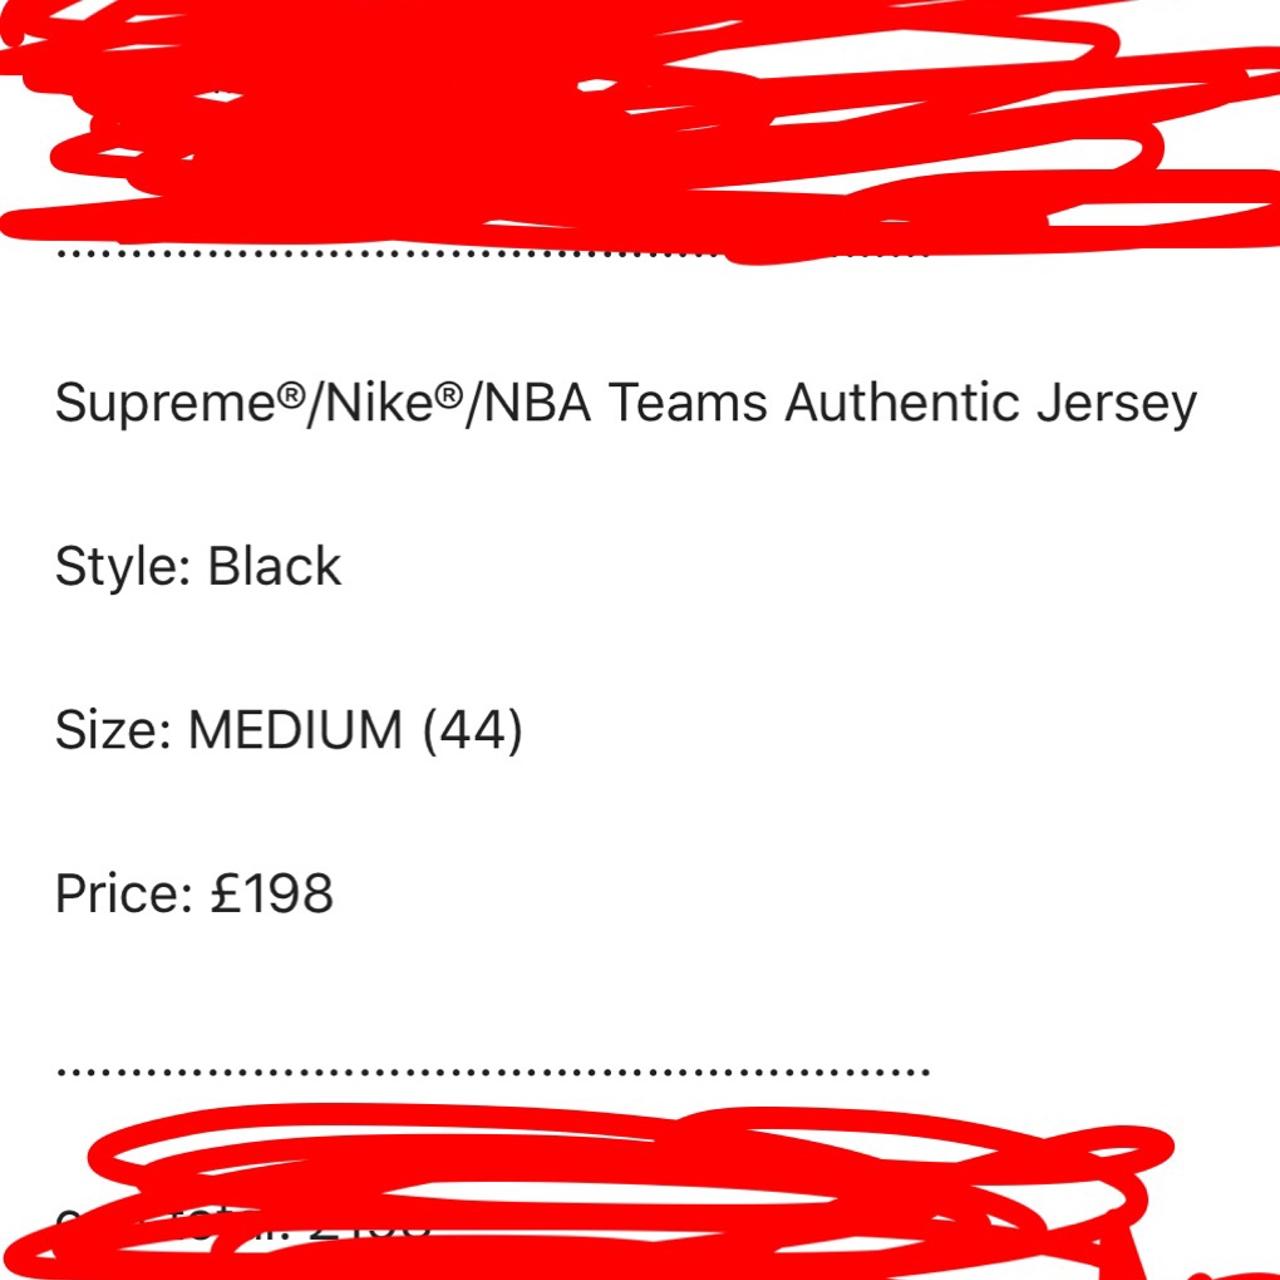 Supreme x Nike x NBA Teams Authentic Jersey 'Black